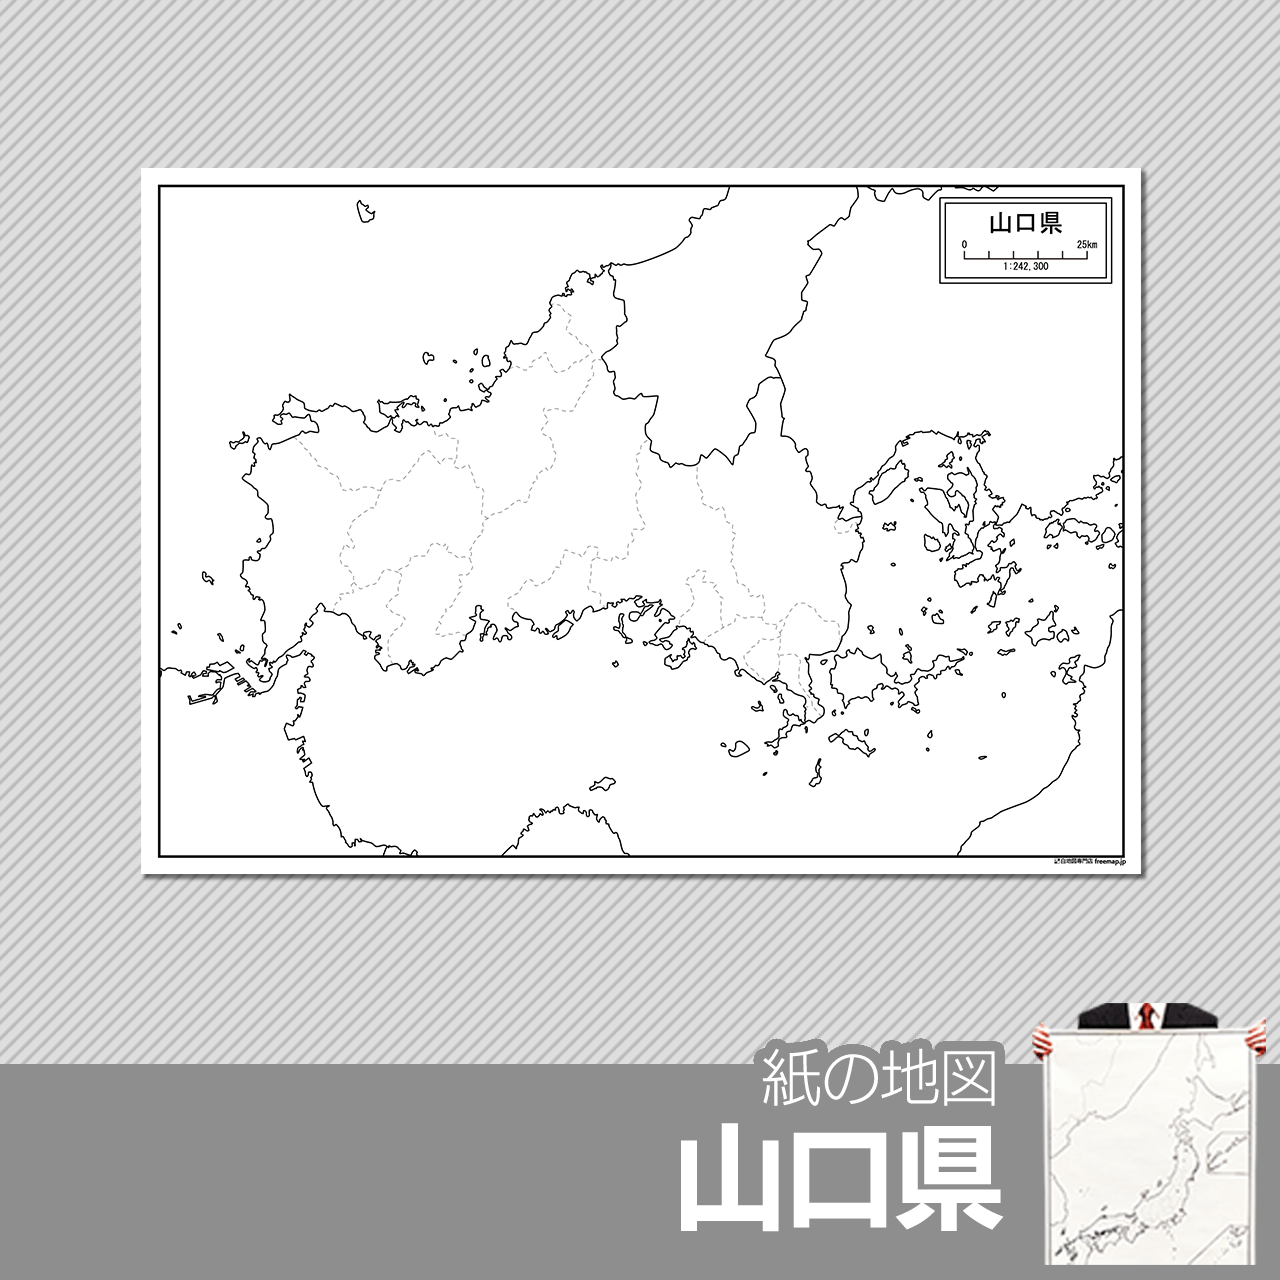 山口県の白地図 白地図専門店